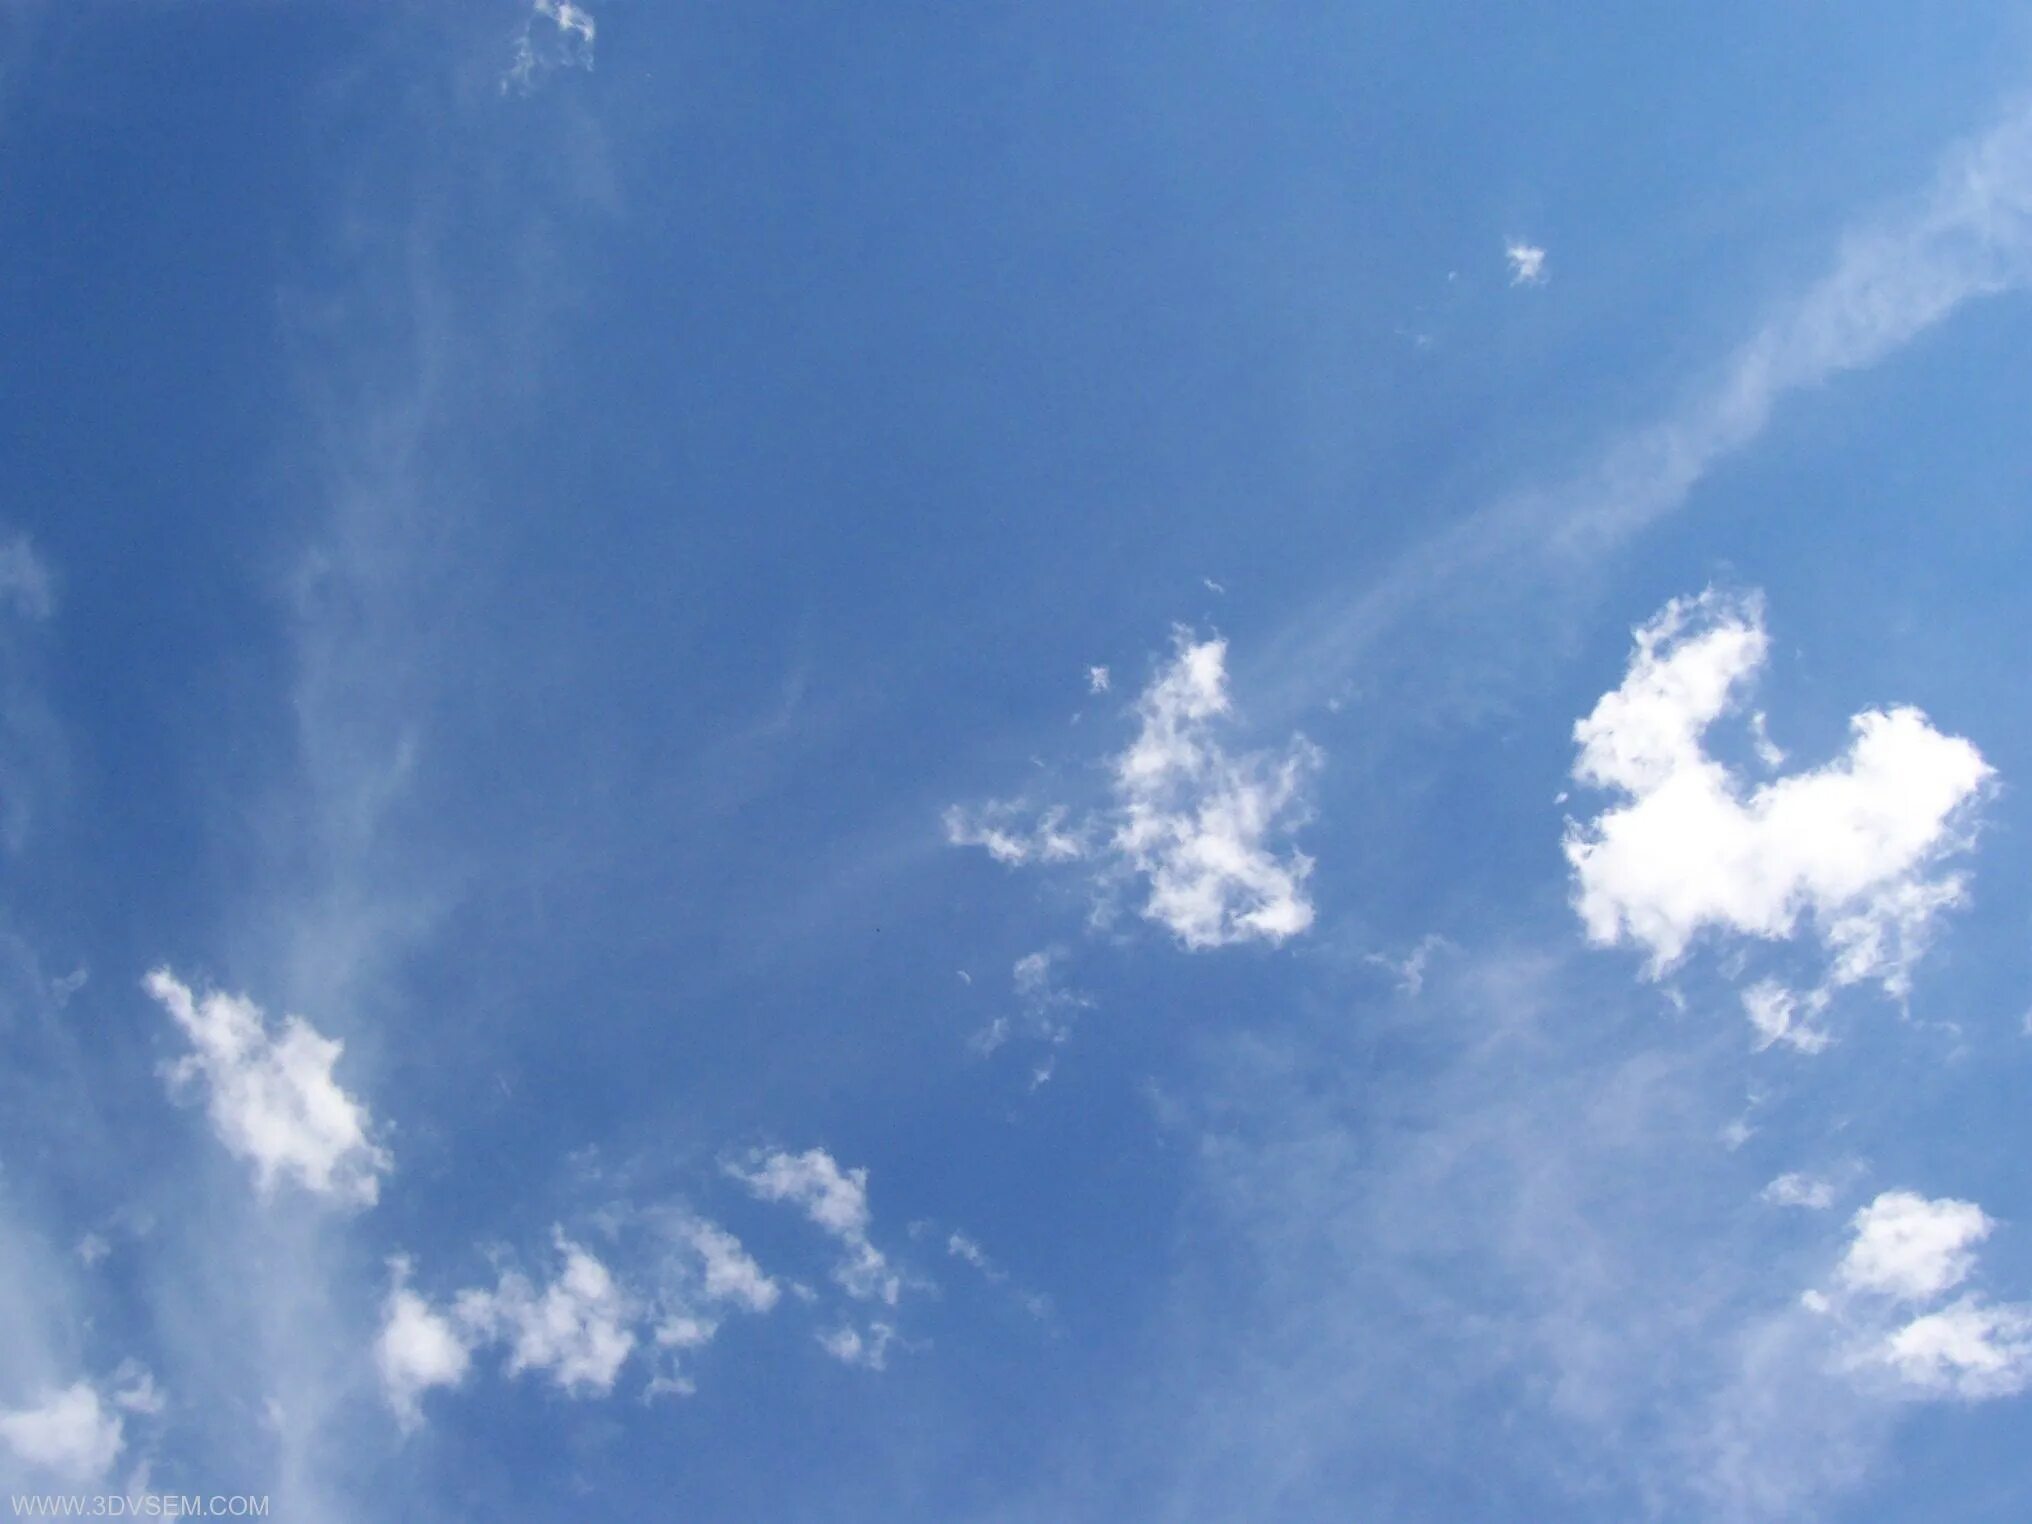 В оконной раме голубеет квадратик чистого неба. Небо. Небо текстура. Отражение неба в окне. Голубое небо.